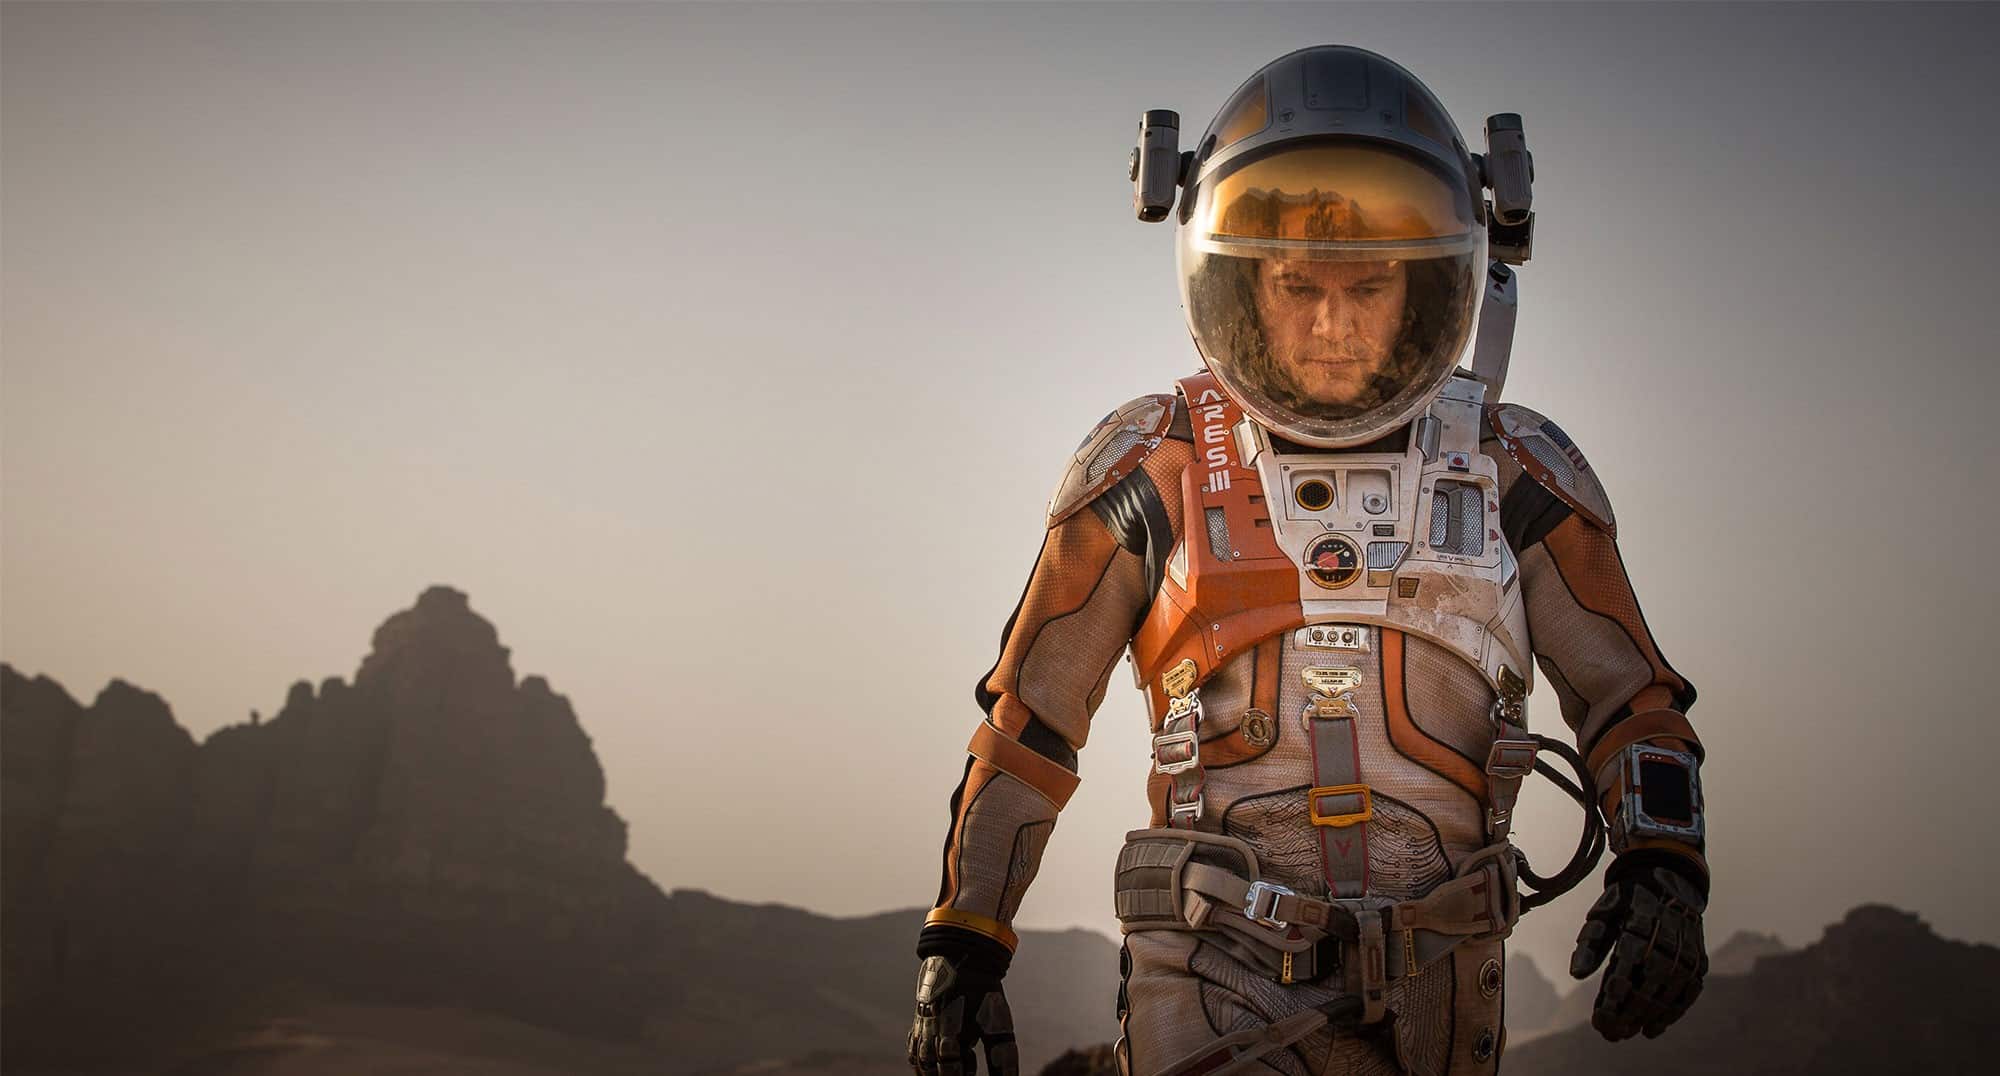 Los 5 mejores filmes de ciencia ficción según Ridley Scott